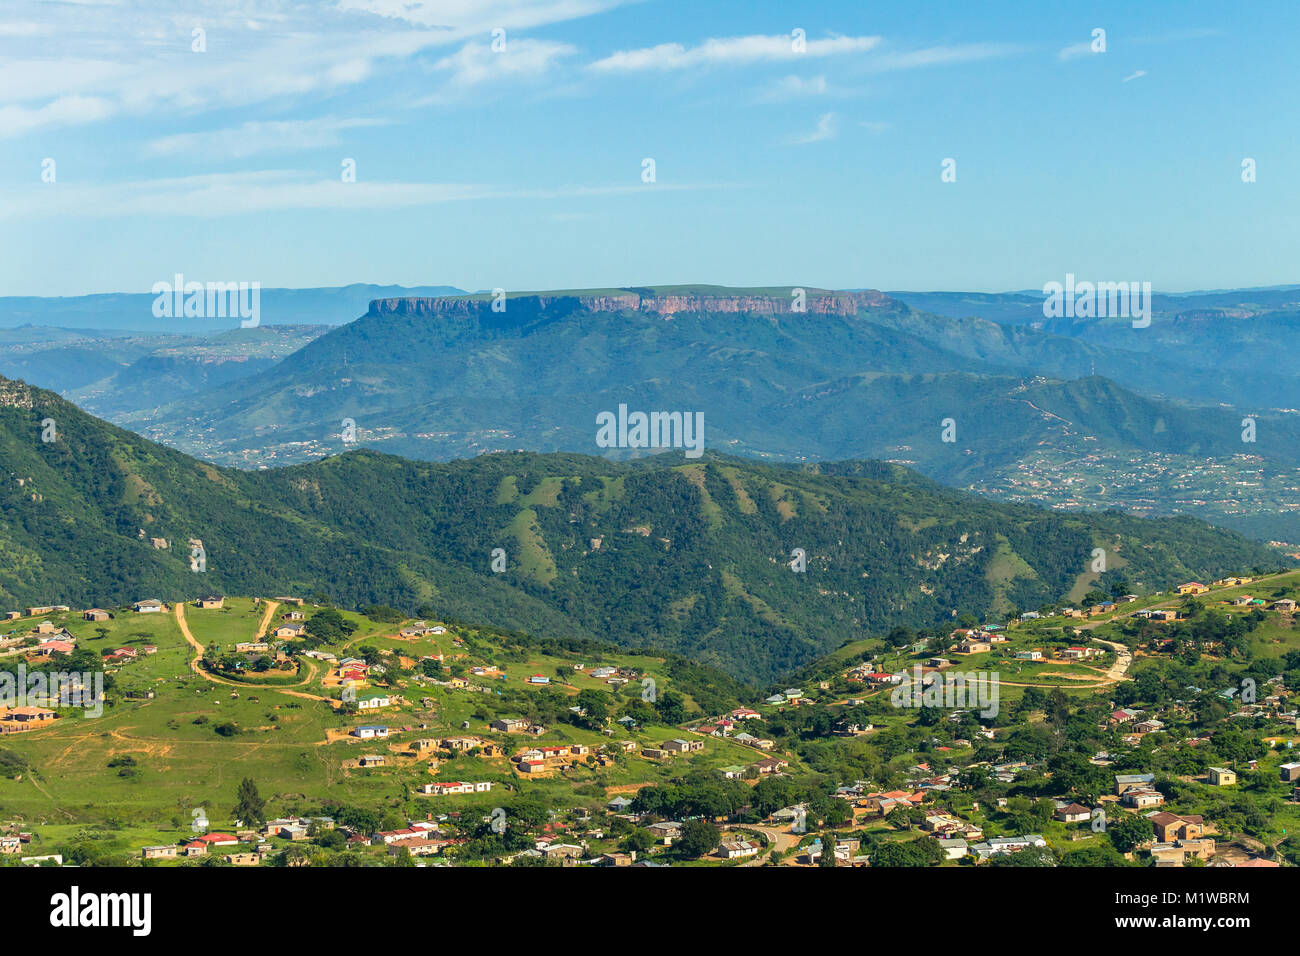 Vue d'oiseau-oeil vol Afrique Du Sud rural paysage montagnes vallées Inanda Inchanga avec foyers tribaux sur le paysage vert de l'été photo. Banque D'Images